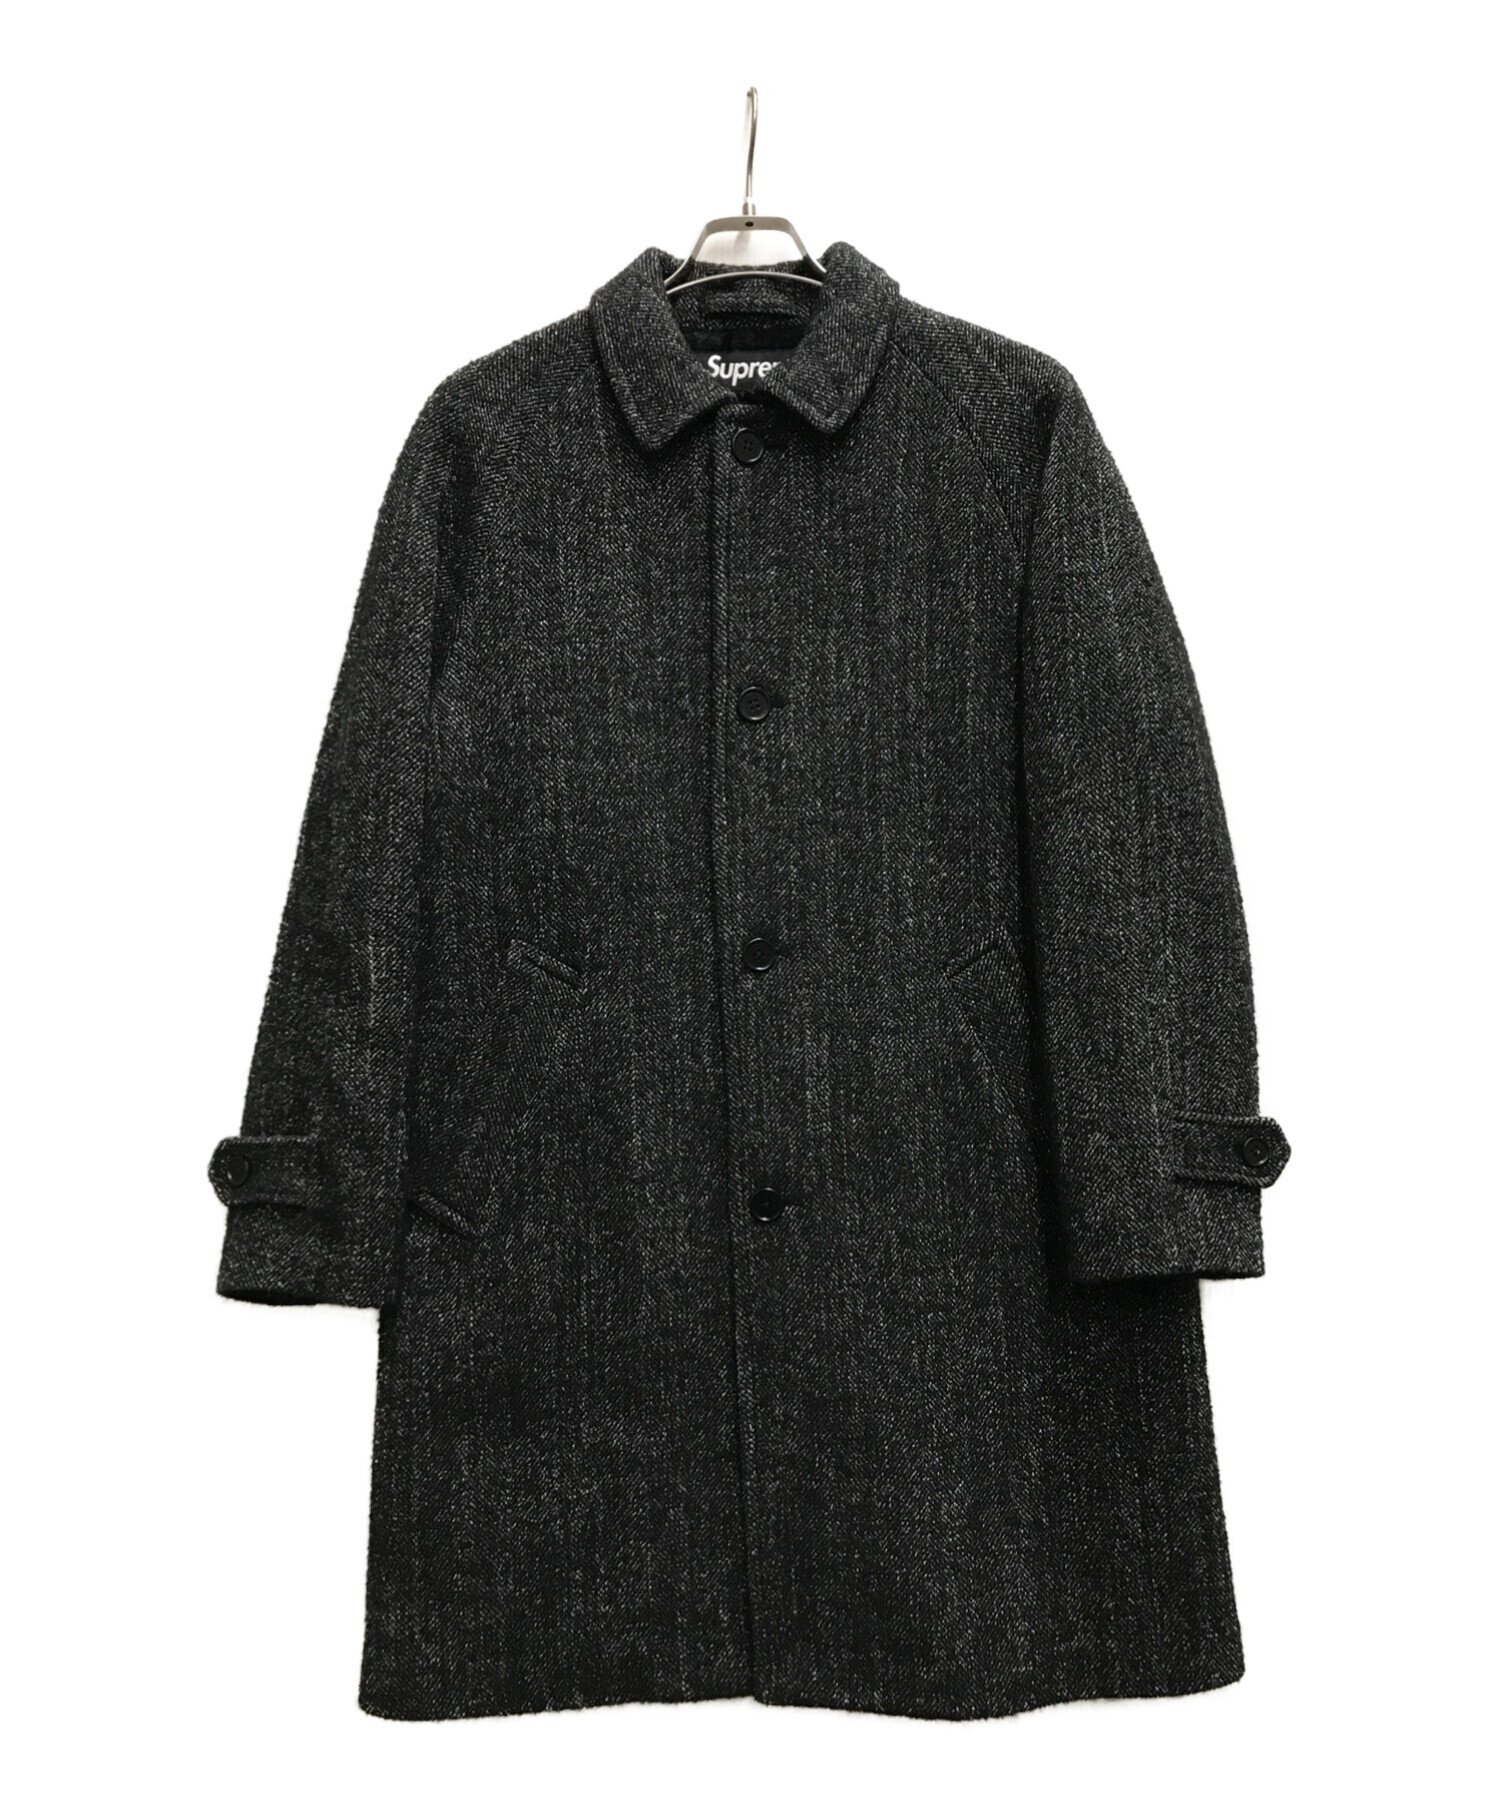 品名FW18SupFW18 Supreme Wool Trench Coat コート